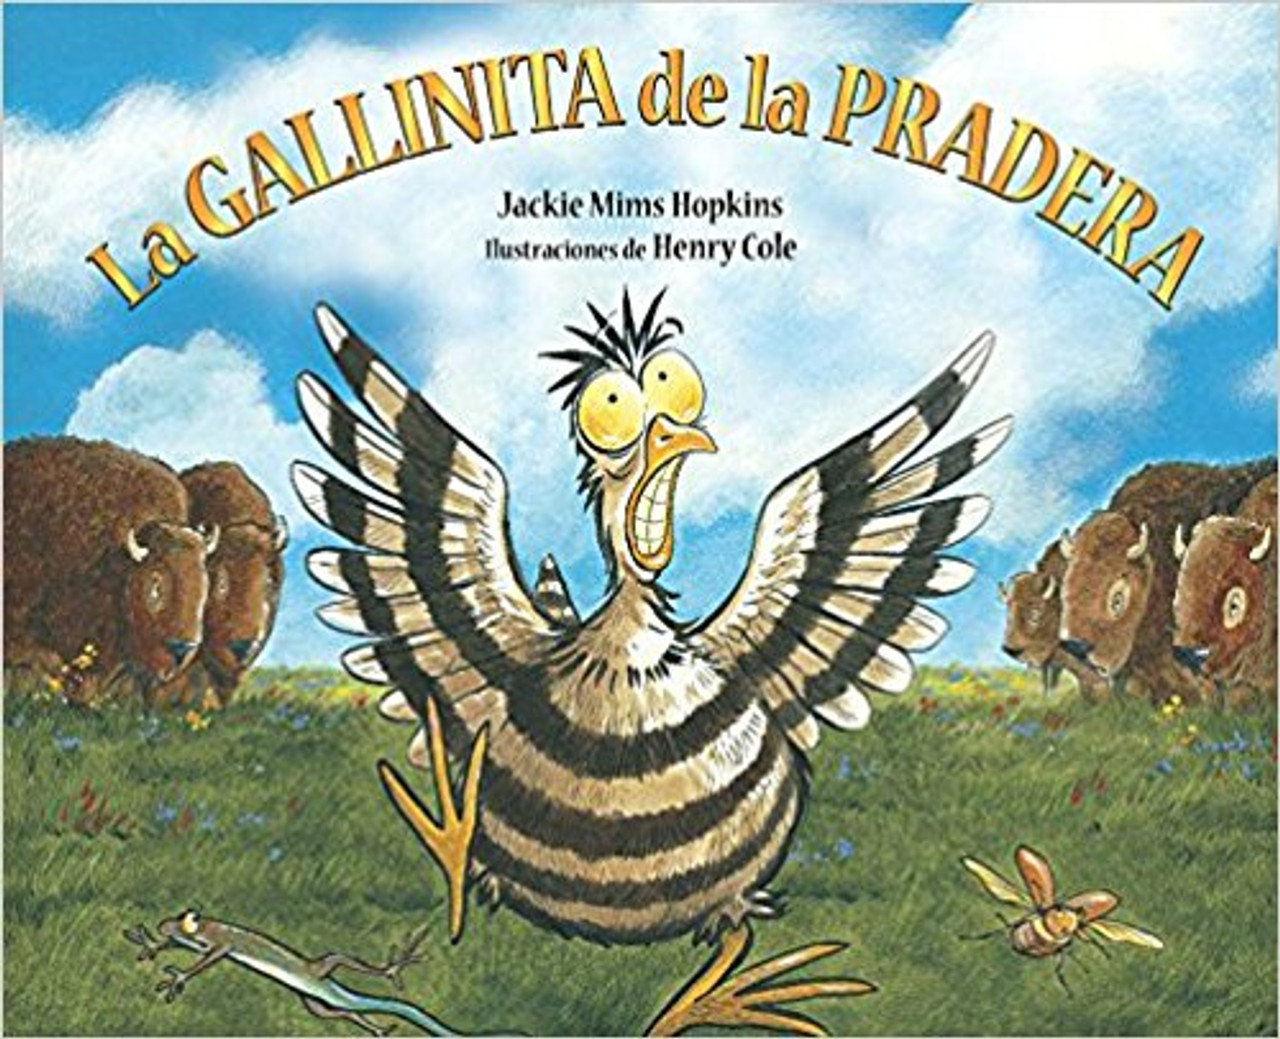 La Gallinita de La Pradera by Jackie Mims Hopkins